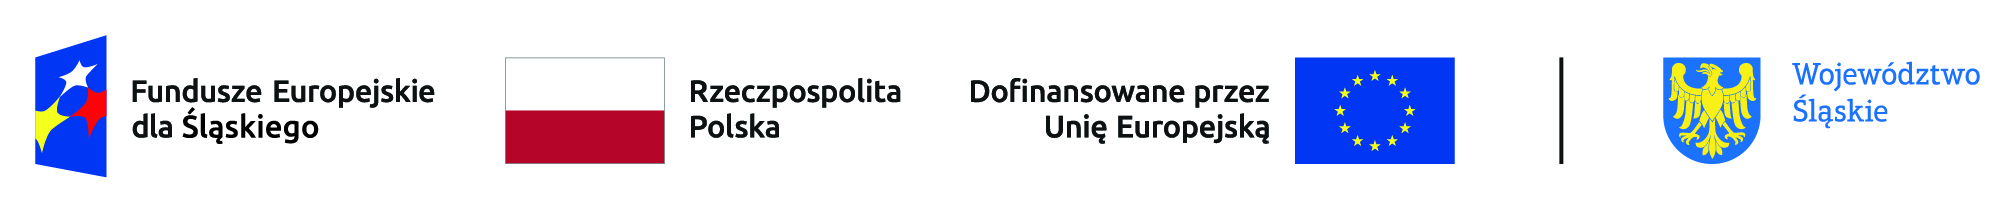 Logotyp projektu współfinansowanego ze środków Unii Europejskiej zawierający znaki: Fundusze Europejskie dla Ślaskiego, flagę unii Europejskiej, godło RP, herb województwa śląskiego.